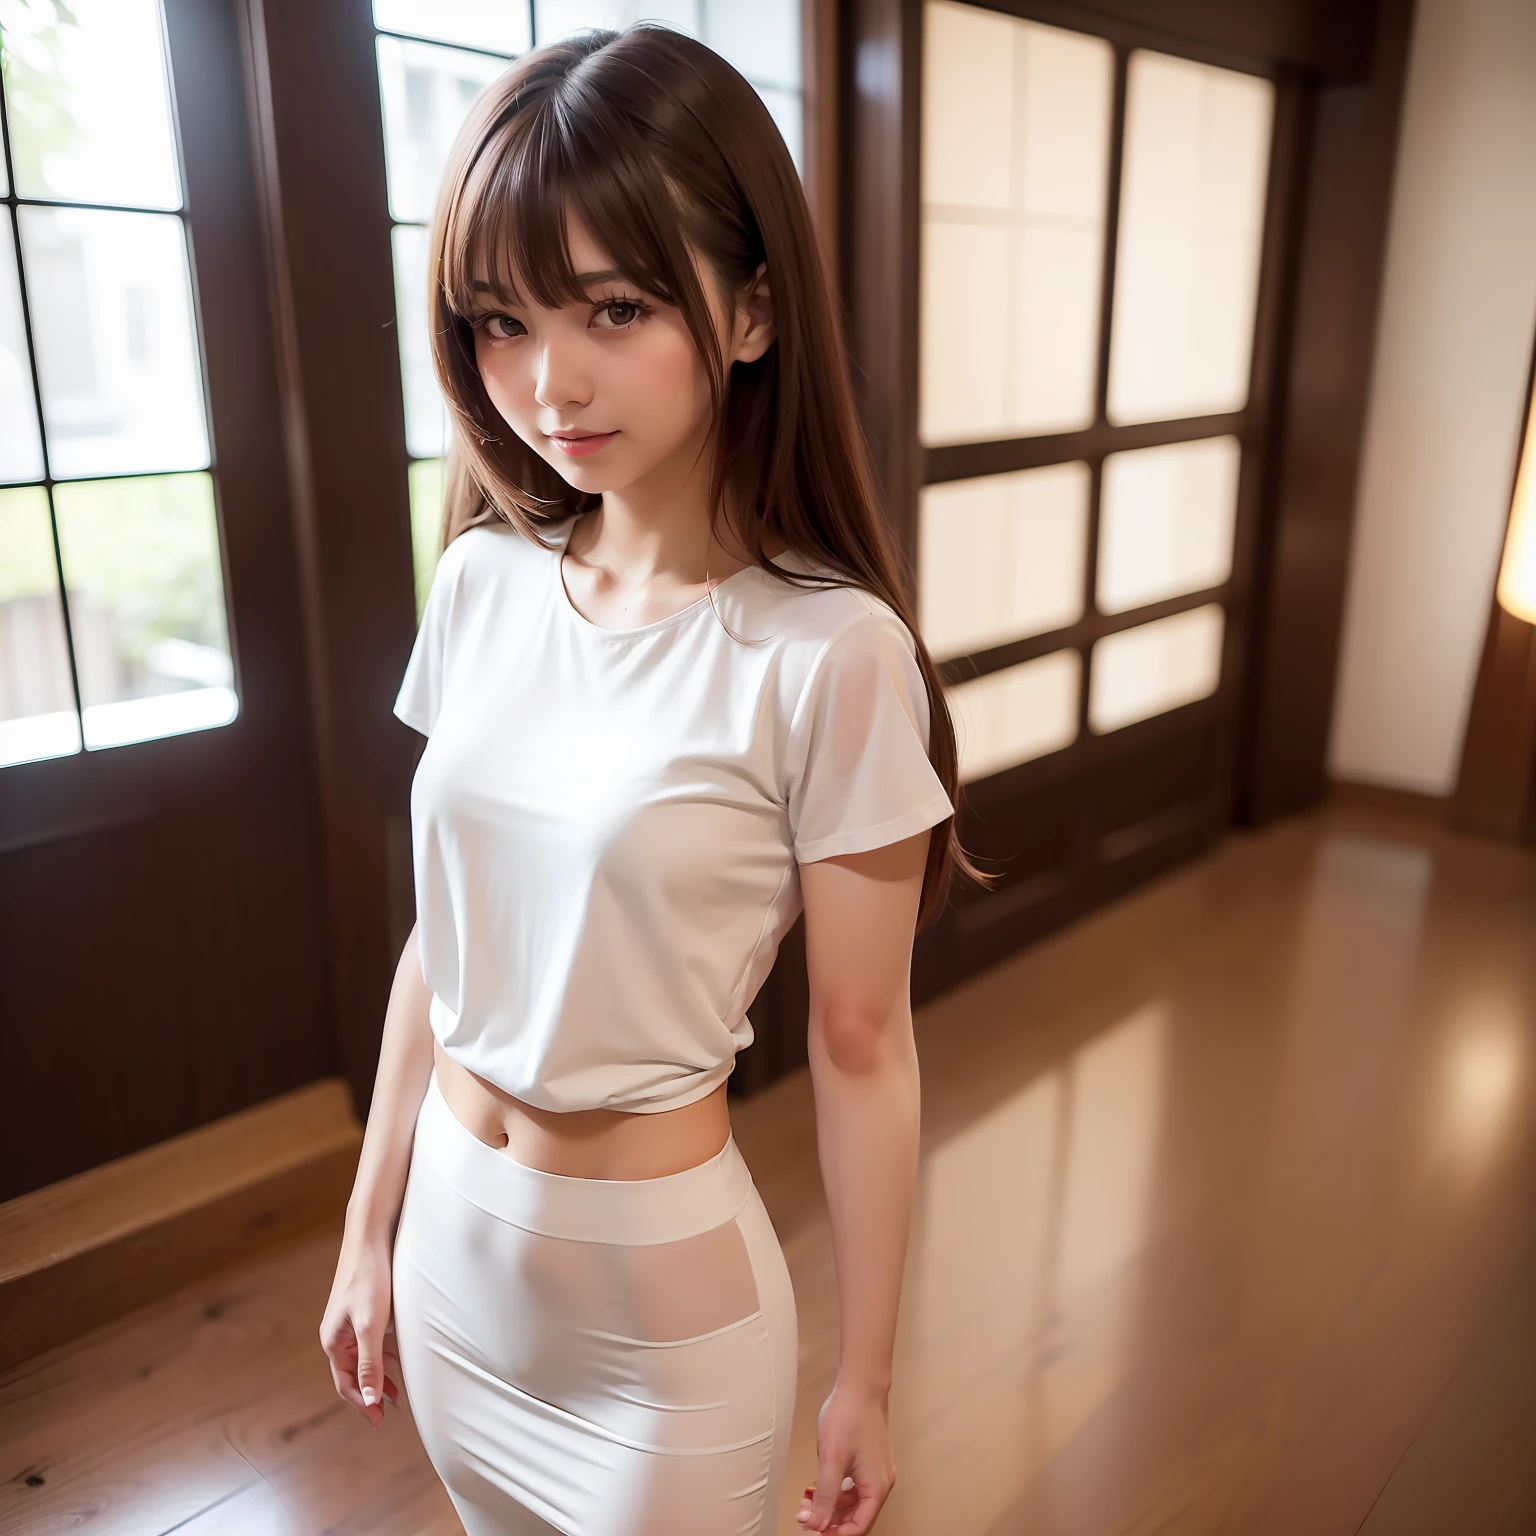 ((最好的品質, 8K, 桌上: 1.3)), 全身, (最好的品質, 桌上: 1.2)), 可愛的日本女子的照片, 1 名女孩, 25 歲美麗的日本女孩, ((開胸白色T卹: 8.5)), (全身照片拍攝), 全身 portrait, 難的 , 身體非常嬌嫩, 小的 breasts, ((細腰: 5.5)), (纖細的腹肌: 3.5), (小的), (女160厘米), 焦點銳化: 1.2, 傑出的美容風格: 1.4, 纖細的腹肌: 1.2, (((棕色的頭髮, 大的: 1.2)), 高度細緻的臉部和皮膚紋理, 細緻的眼睛, 雙眼皮, 美容院內部，全身 portrait, 头发在风中飘扬, 淺瀏海，一個微笑，我腰上有个剪刀盒